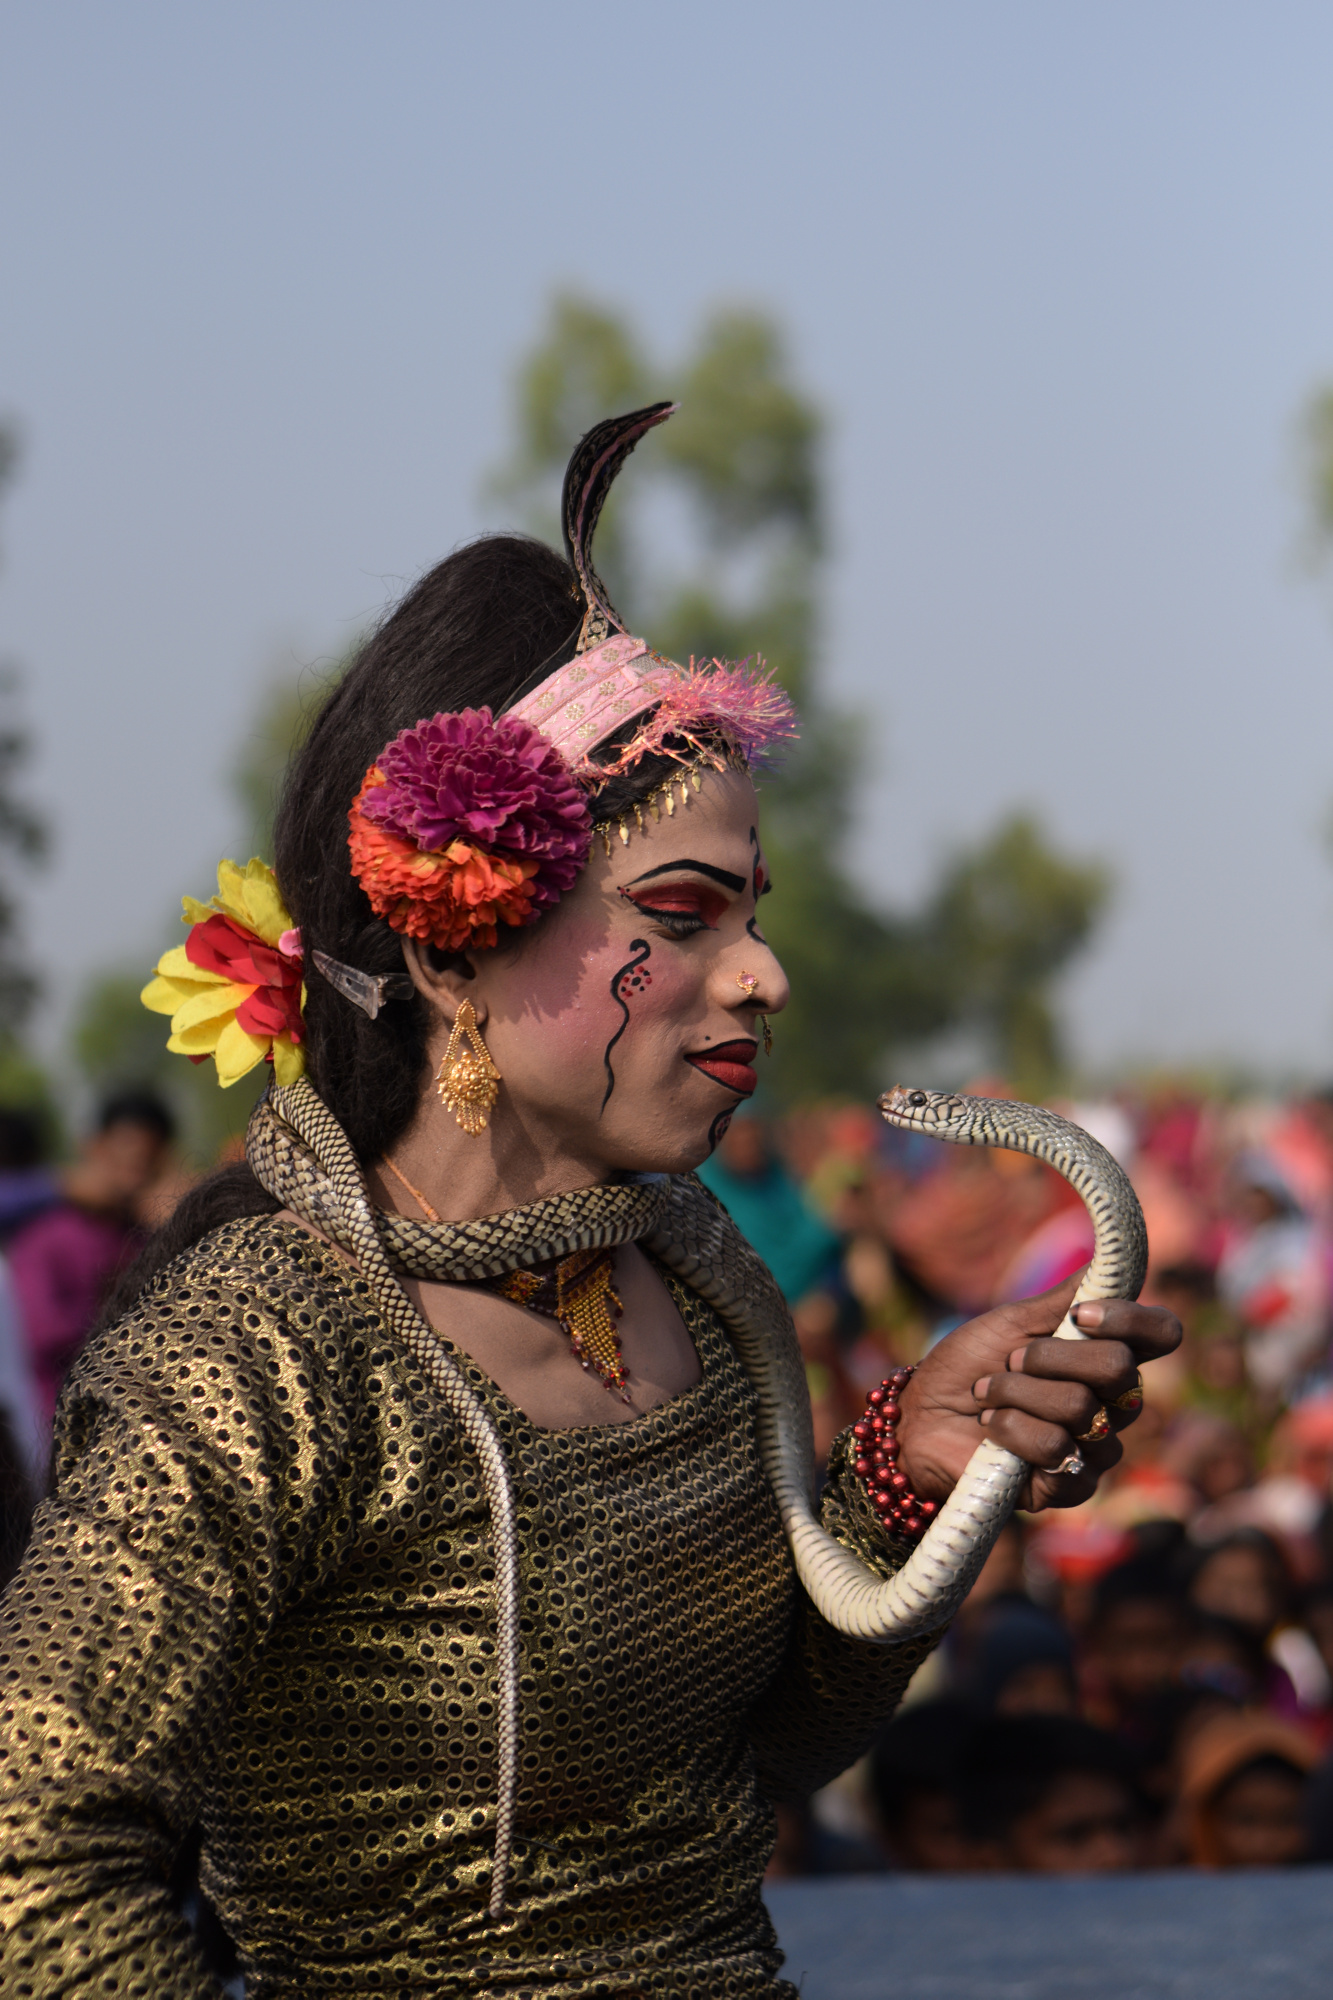 © MD.Fardin Rukhshad Oyan - Bangladesh / UNESCO Youth Eyes on the Silk Roads